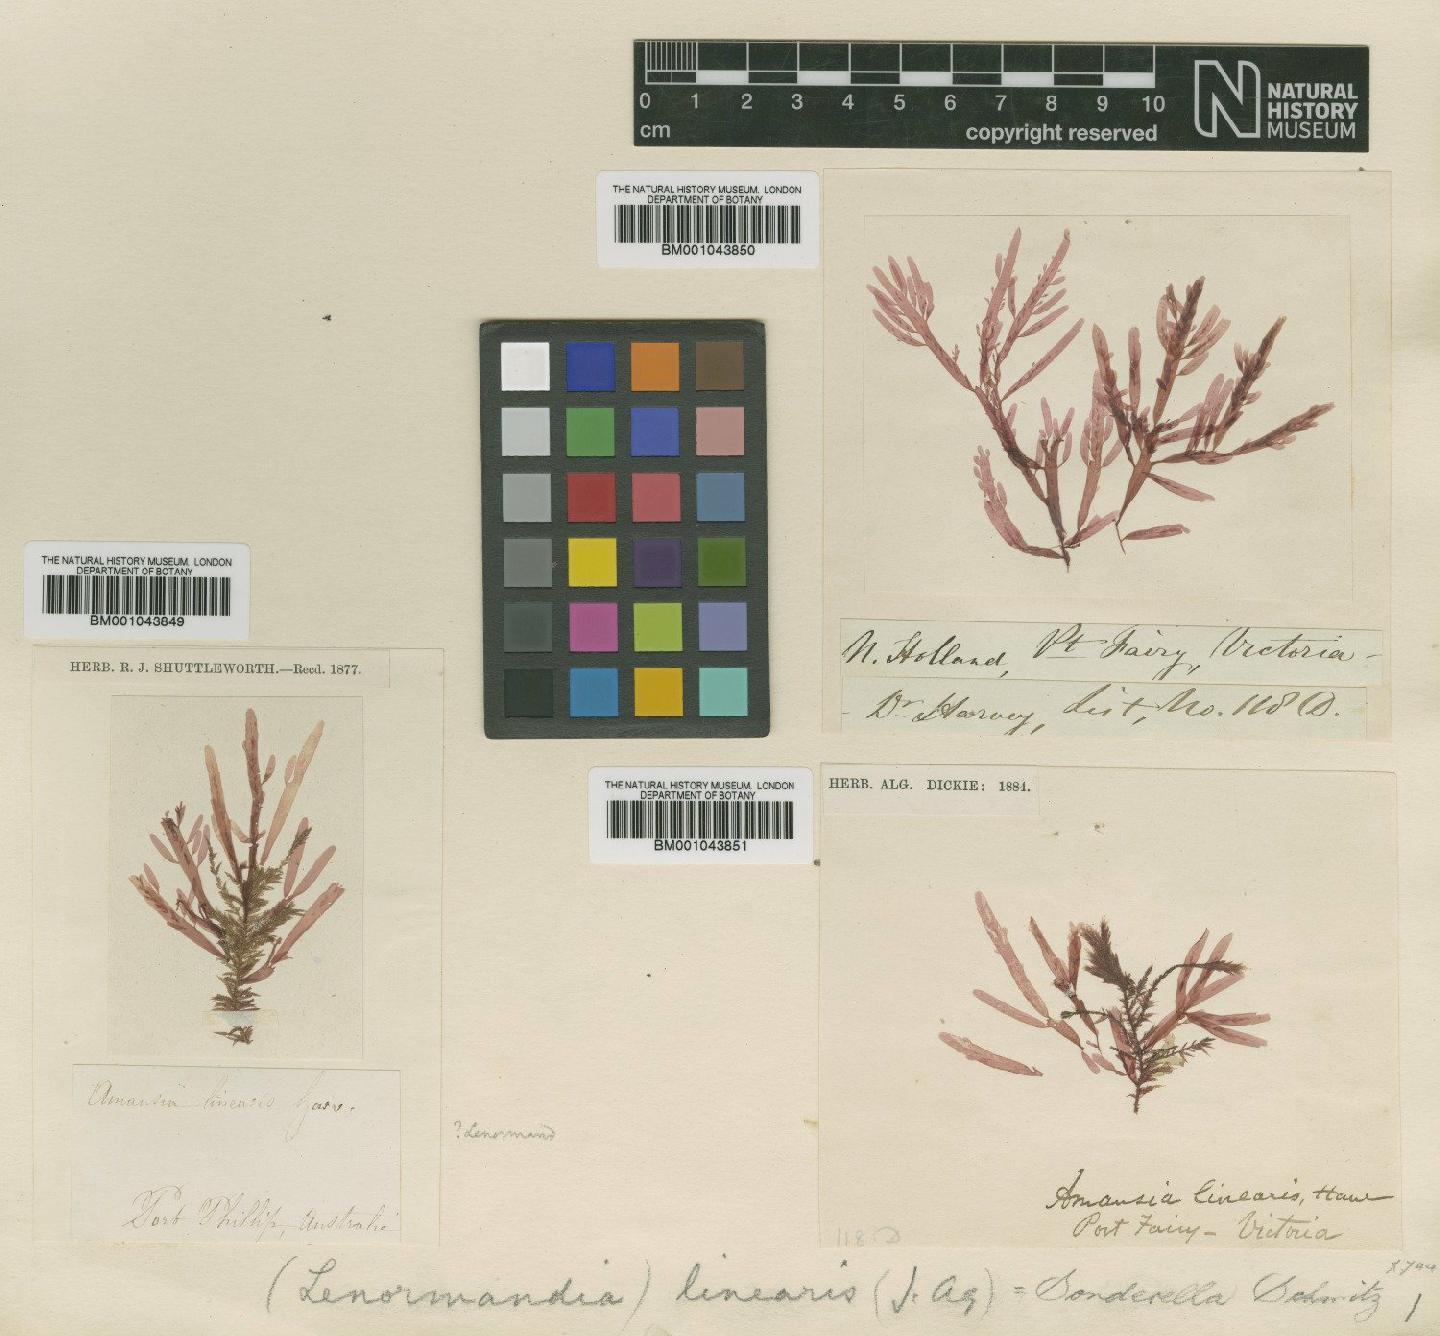 To NHMUK collection (Sonderella linearis (Harv.) F.Schmitz; NHMUK:ecatalogue:2390576)